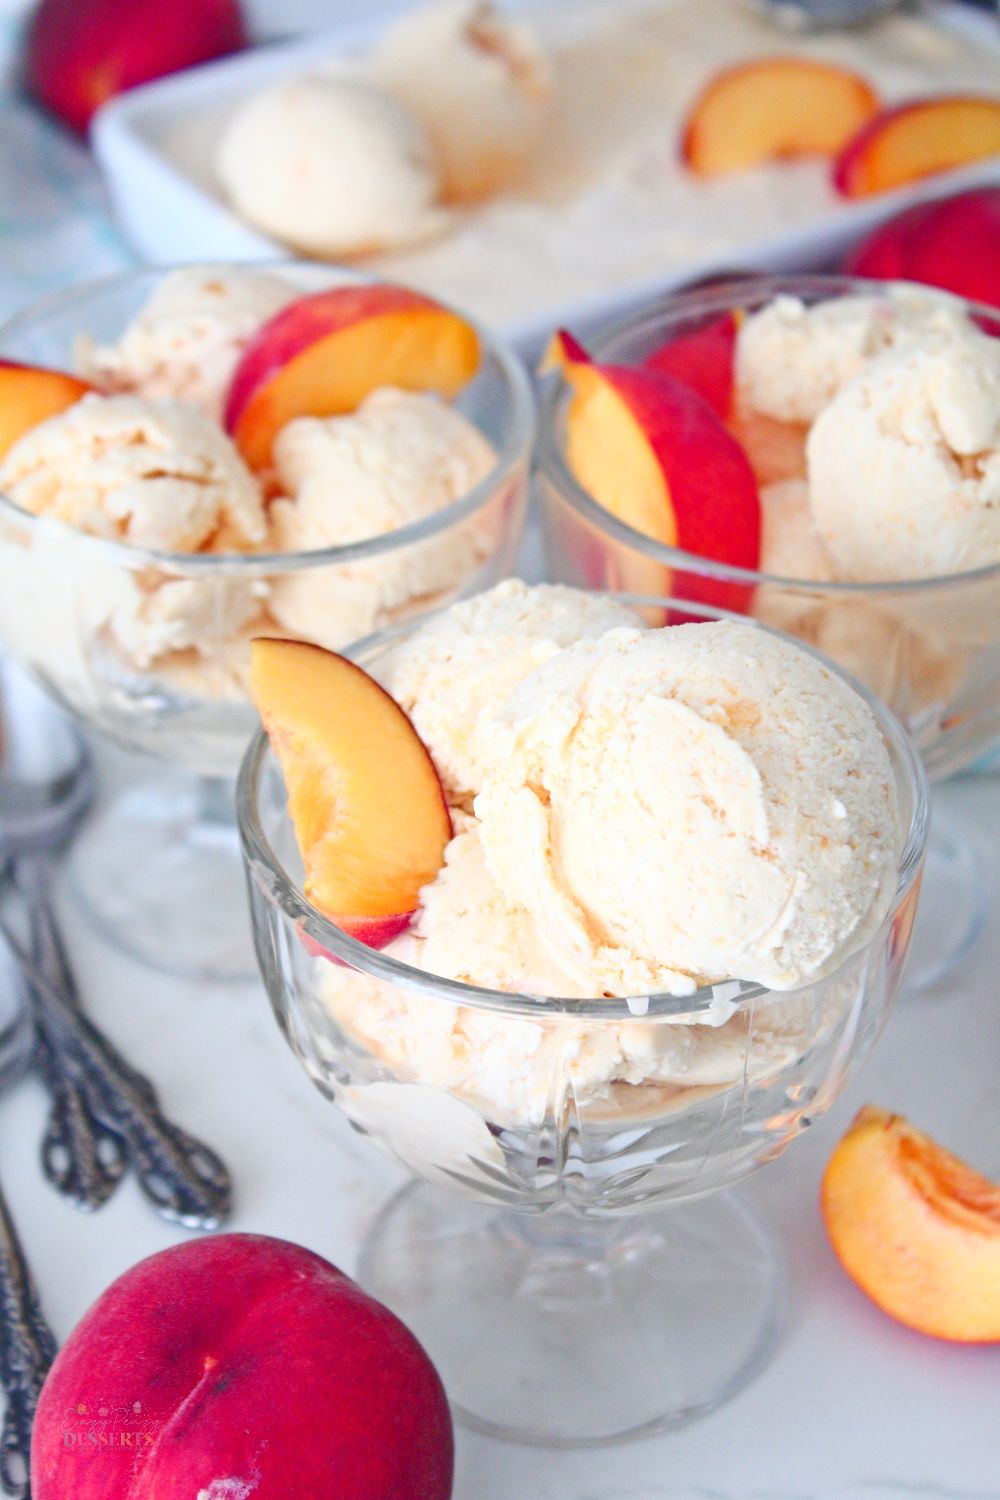 Peaches and cream ice cream in ice cream bowls